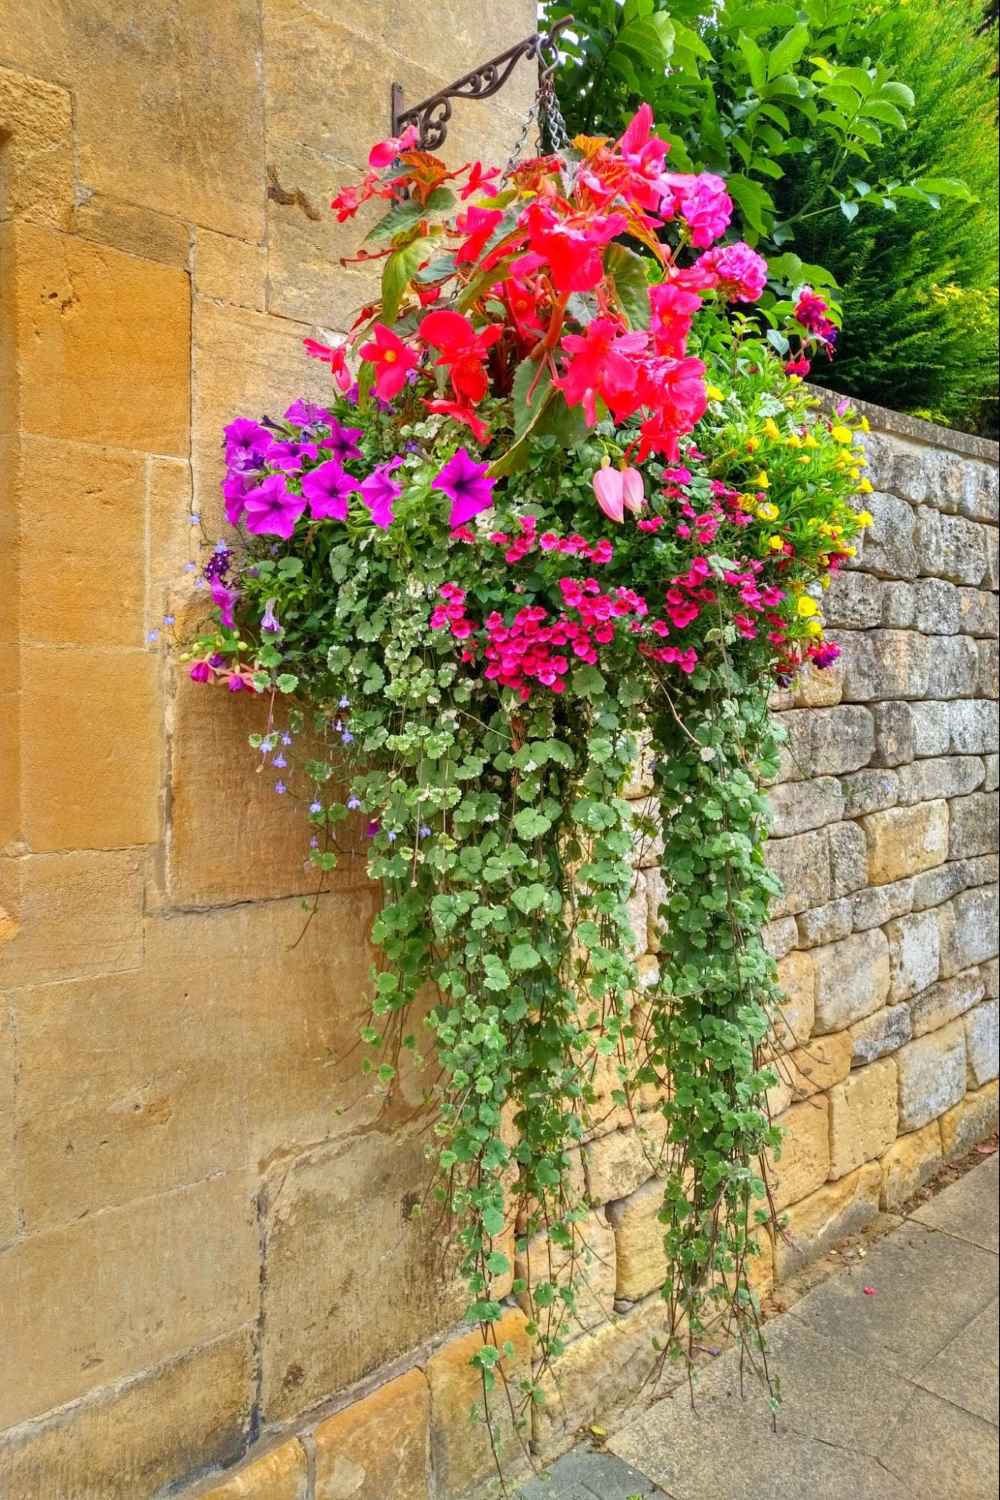 A Hanging Flower Pot